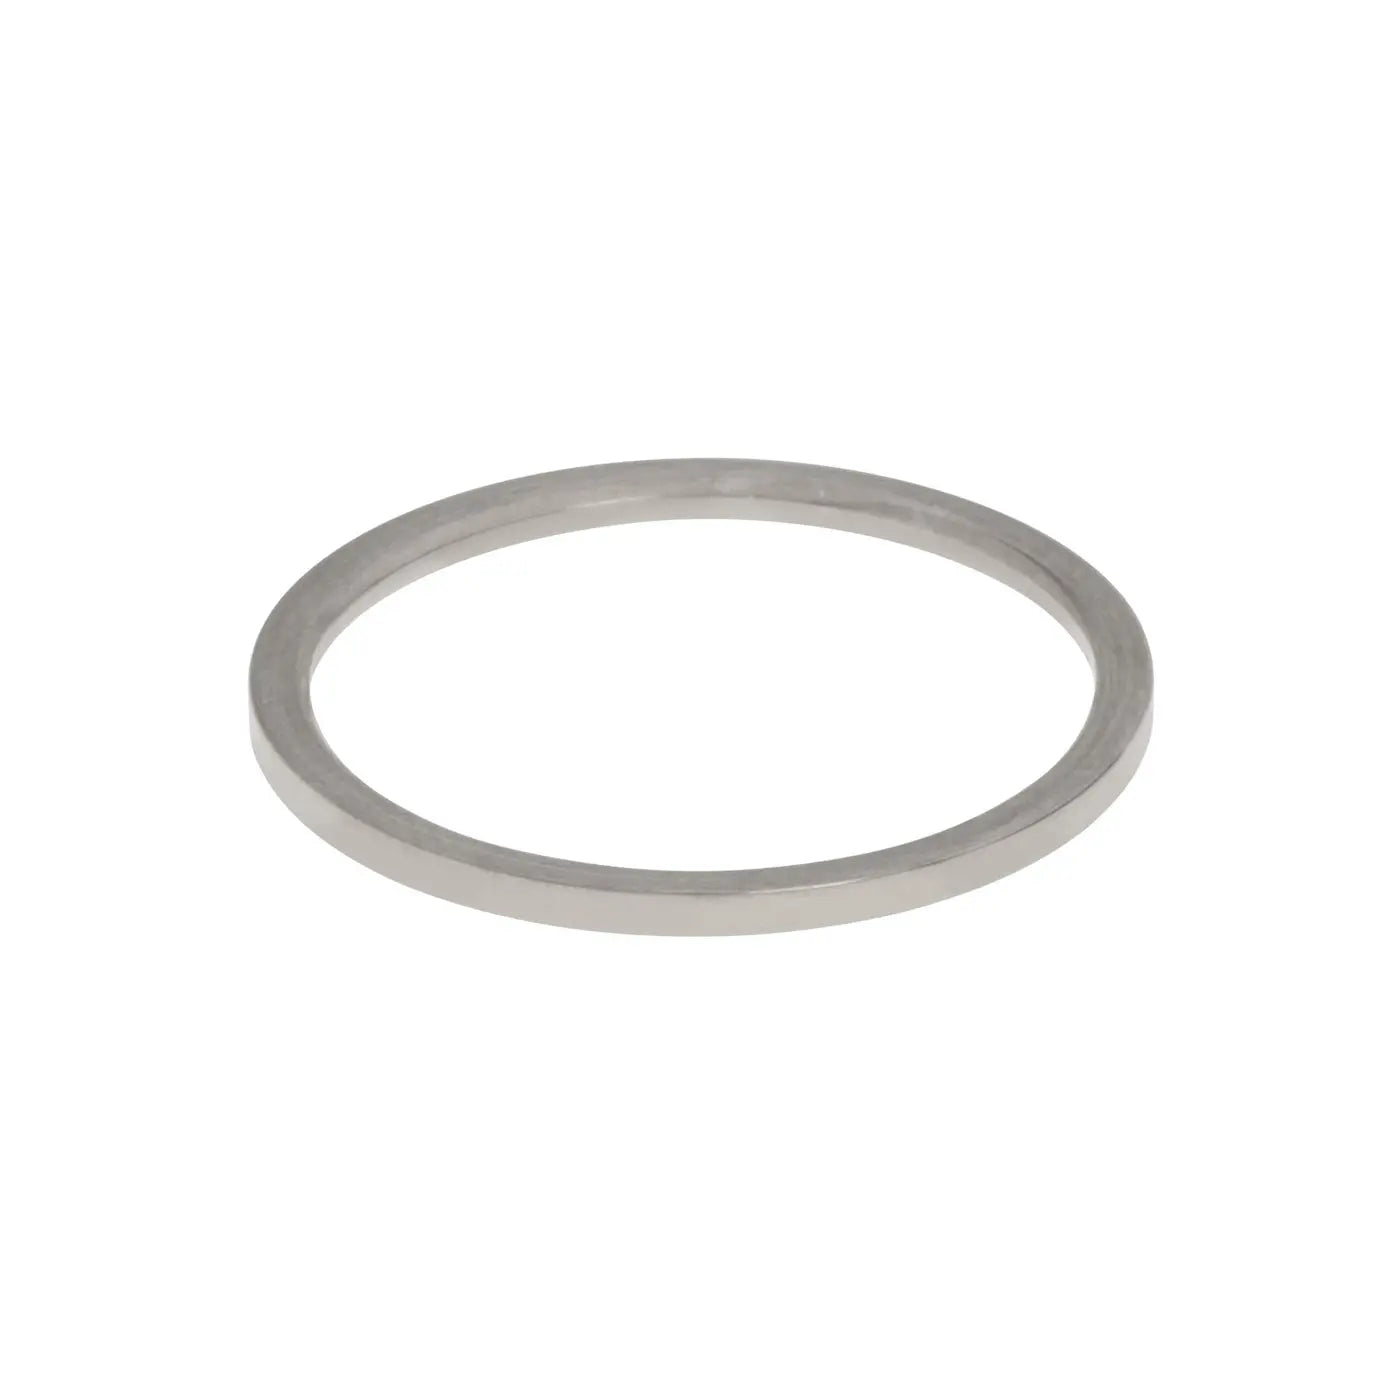 Evi - Simple Sleek Ring Stainless Steel